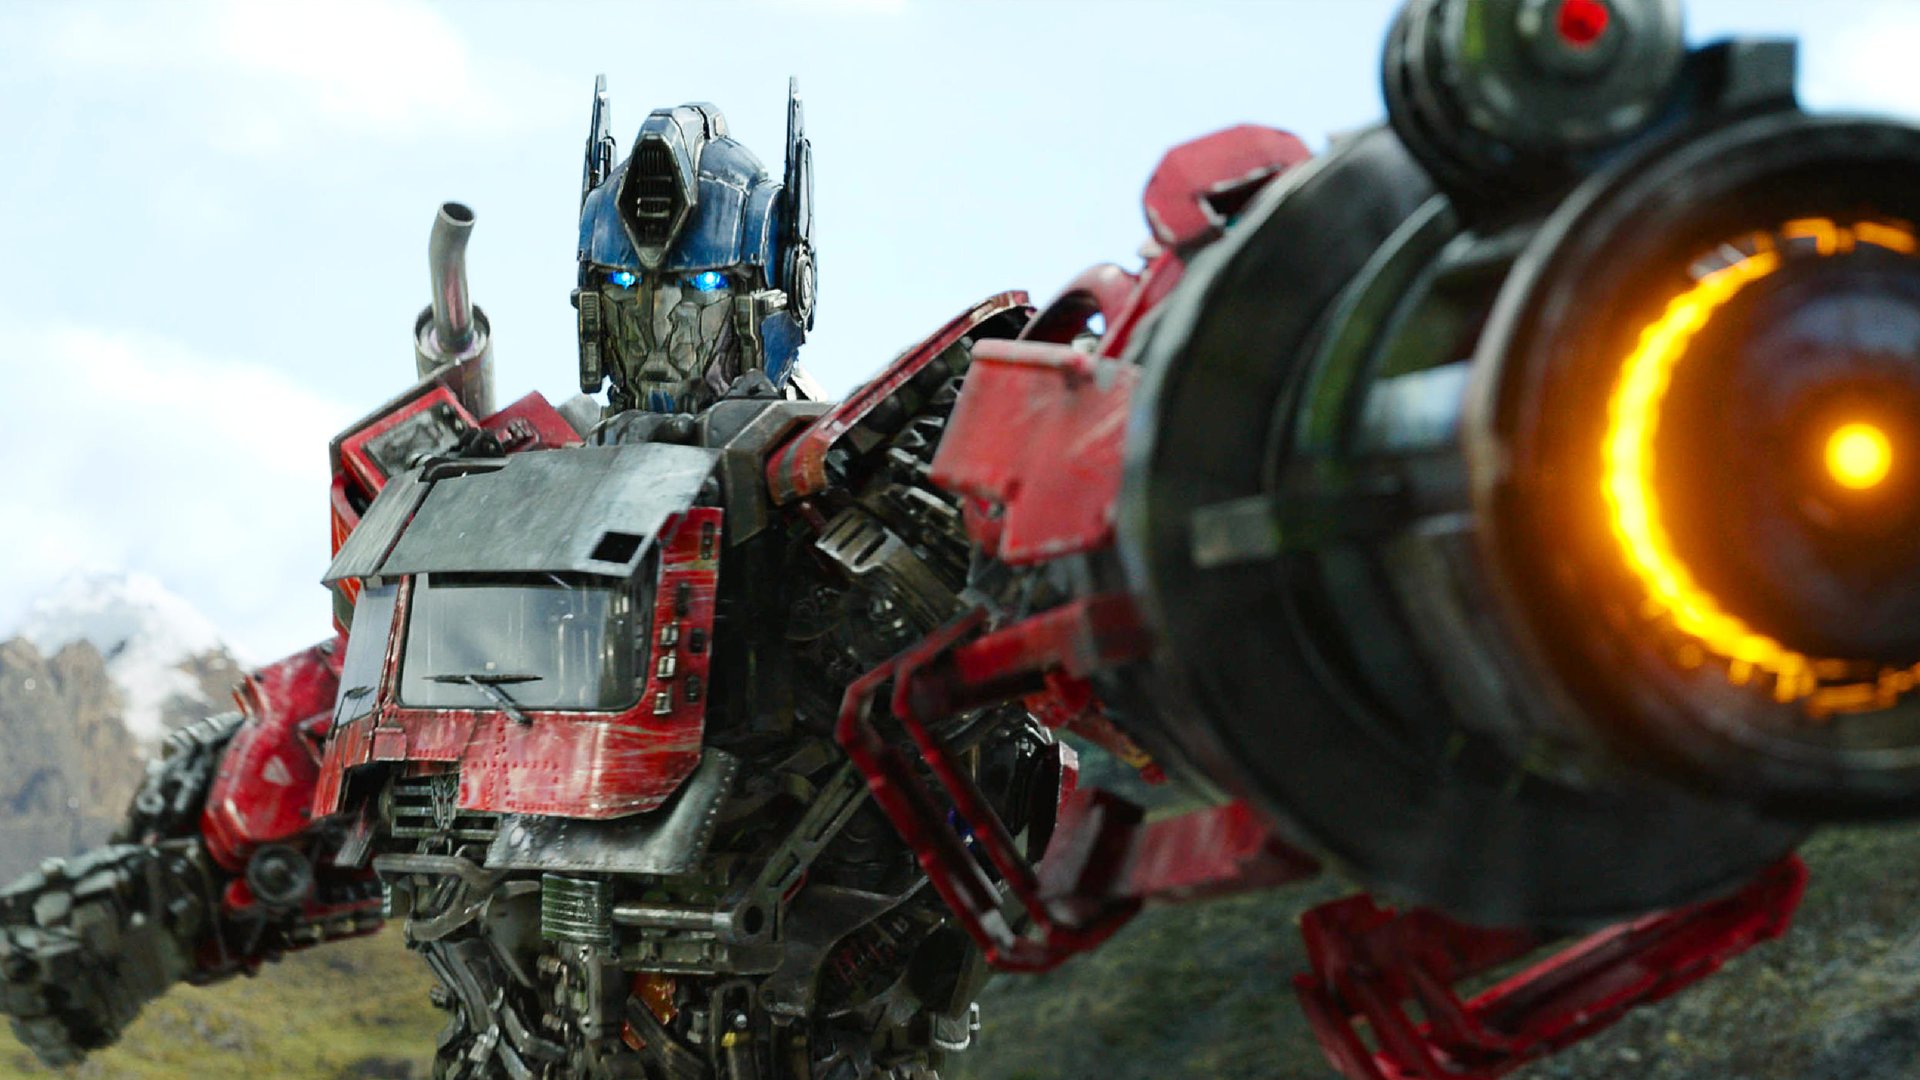 #Fanwunsch wird wahr: Action-Crossover zwischen „Transformers“ und „G.I. Joe“ kommt!